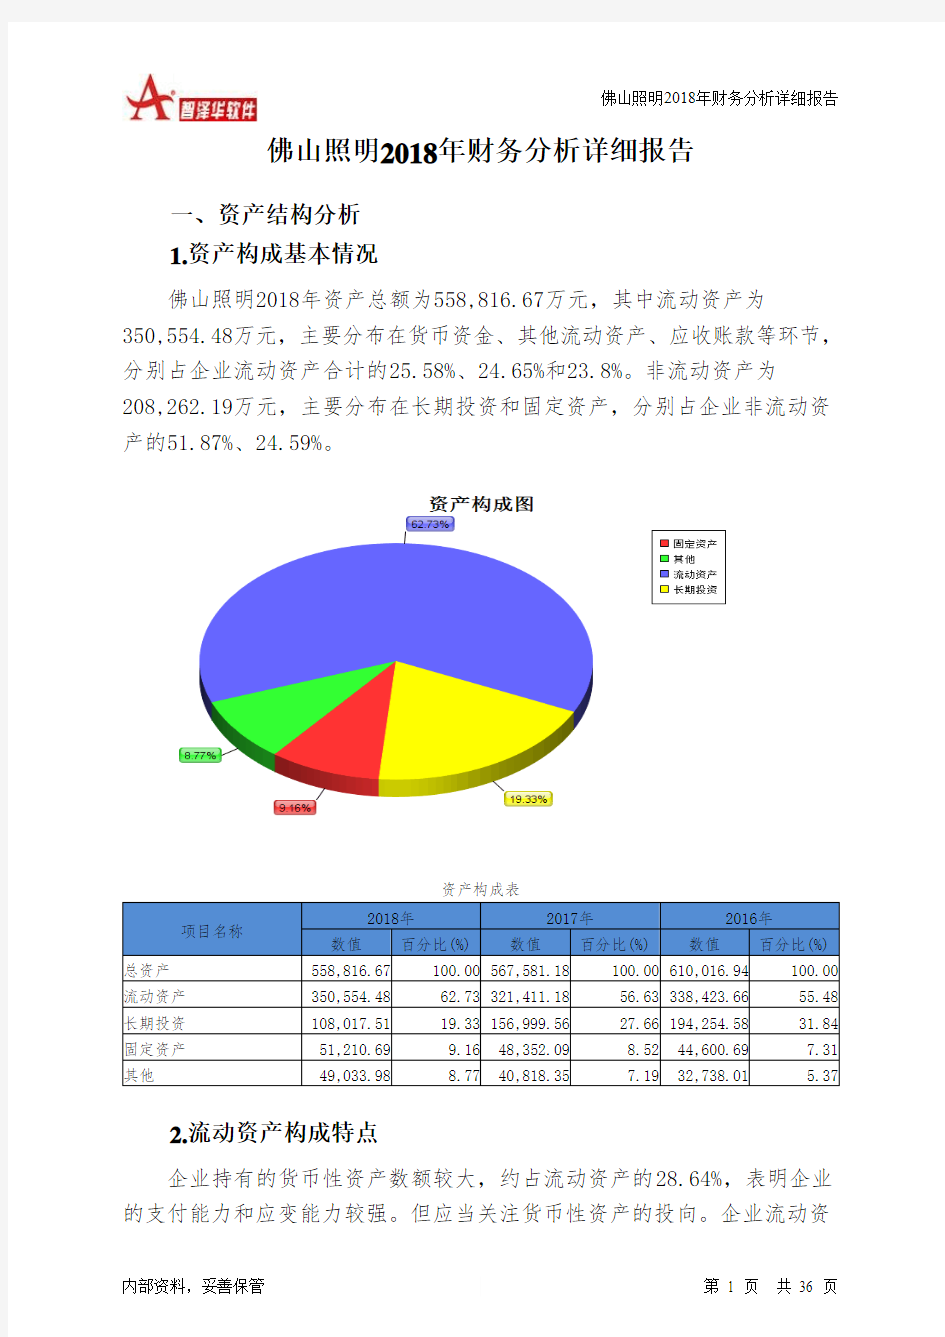 佛山照明2018年财务分析详细报告-智泽华